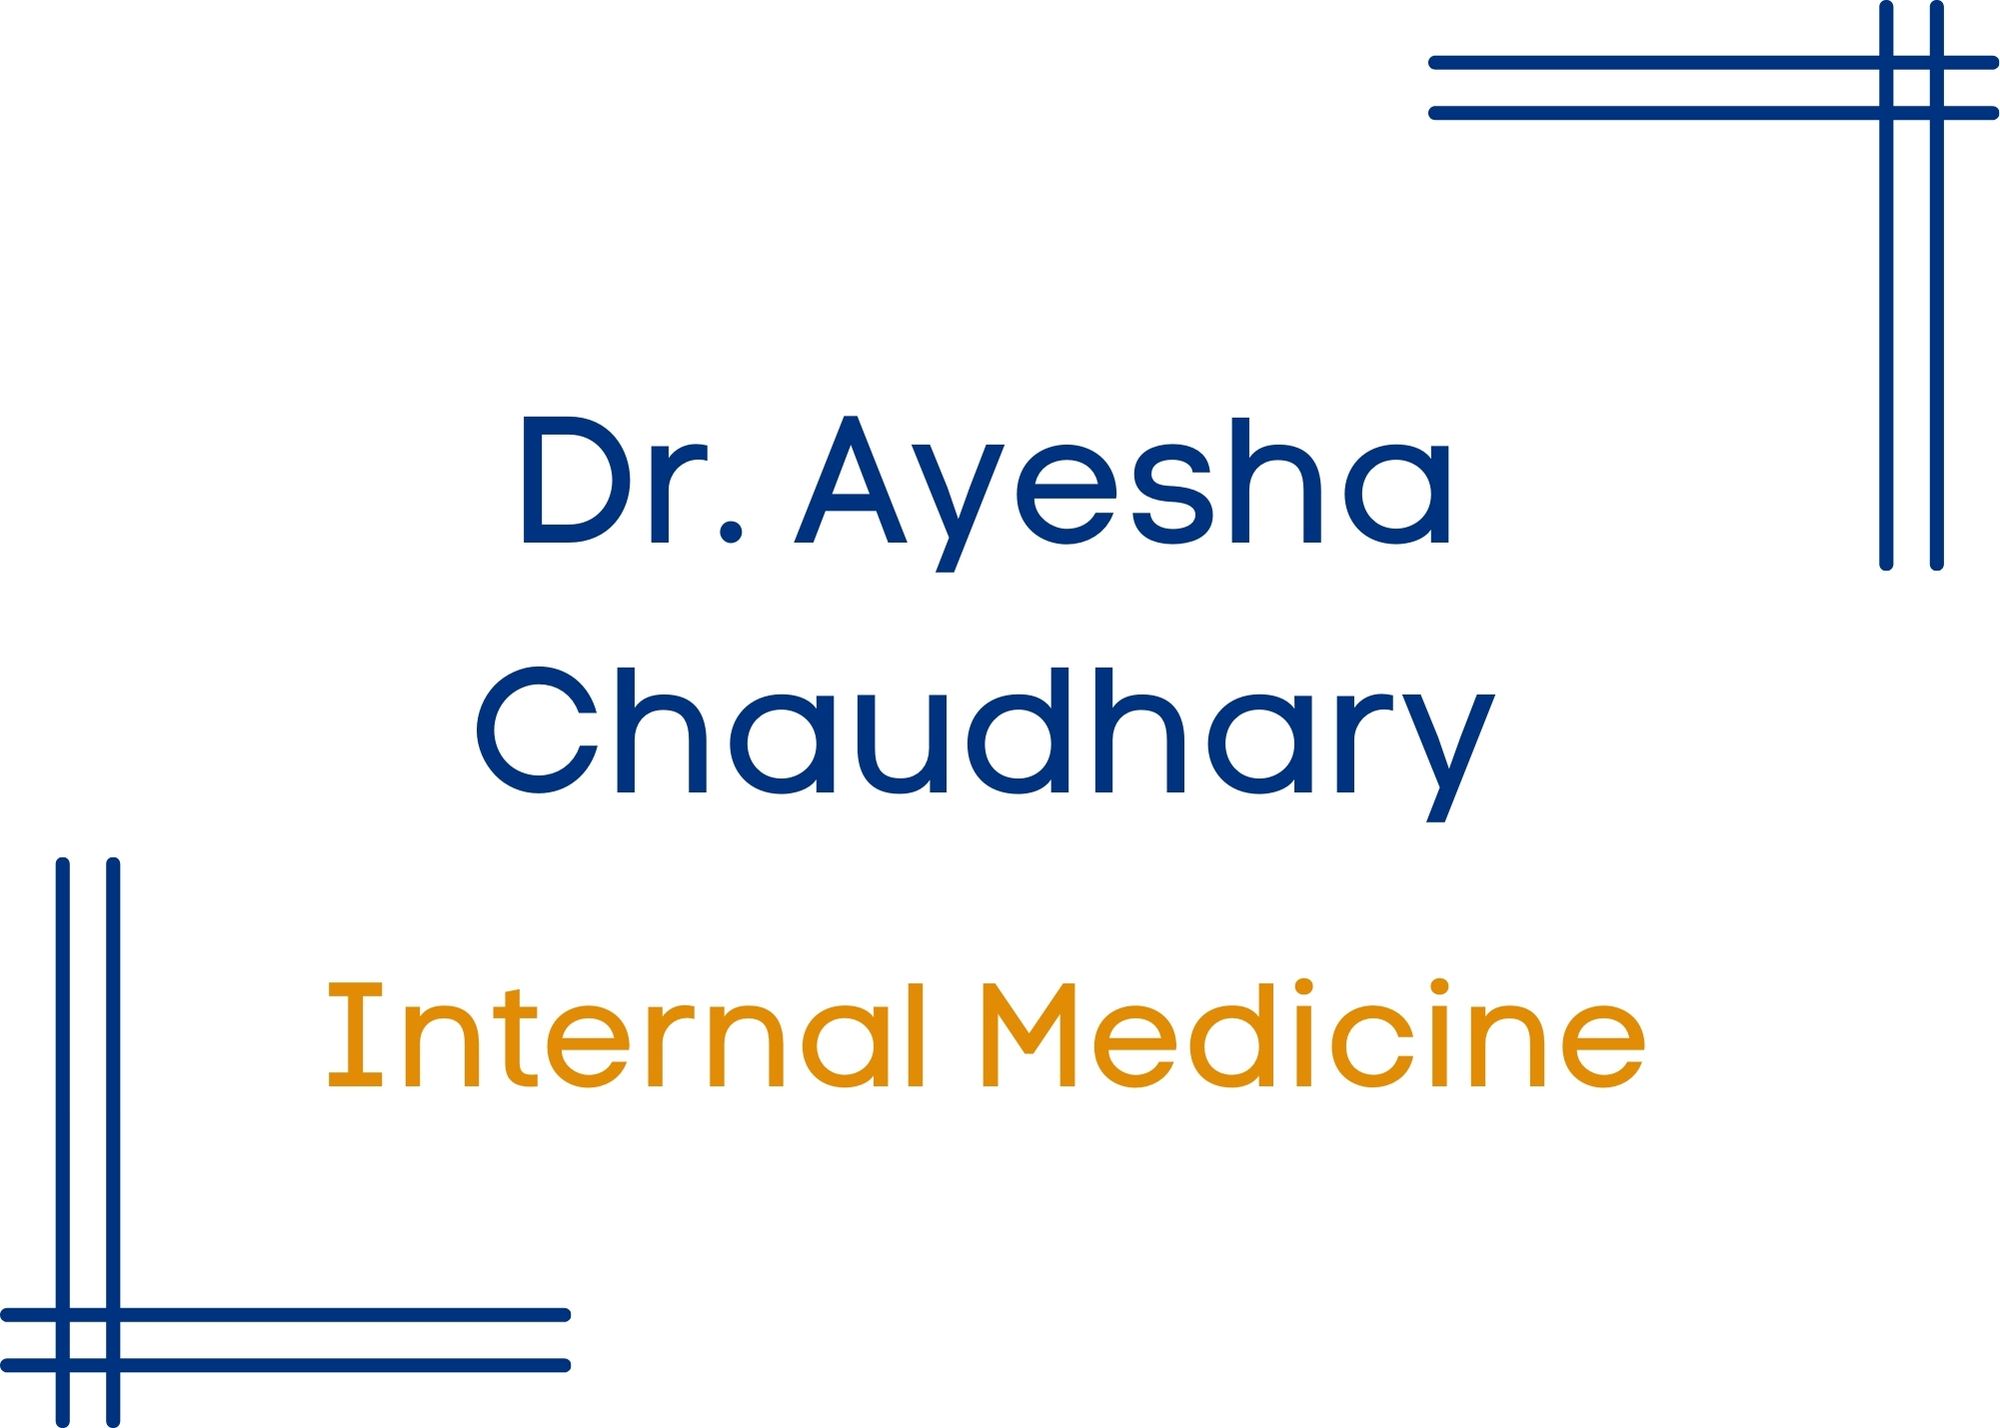 Dr Ayesha Chaudhary